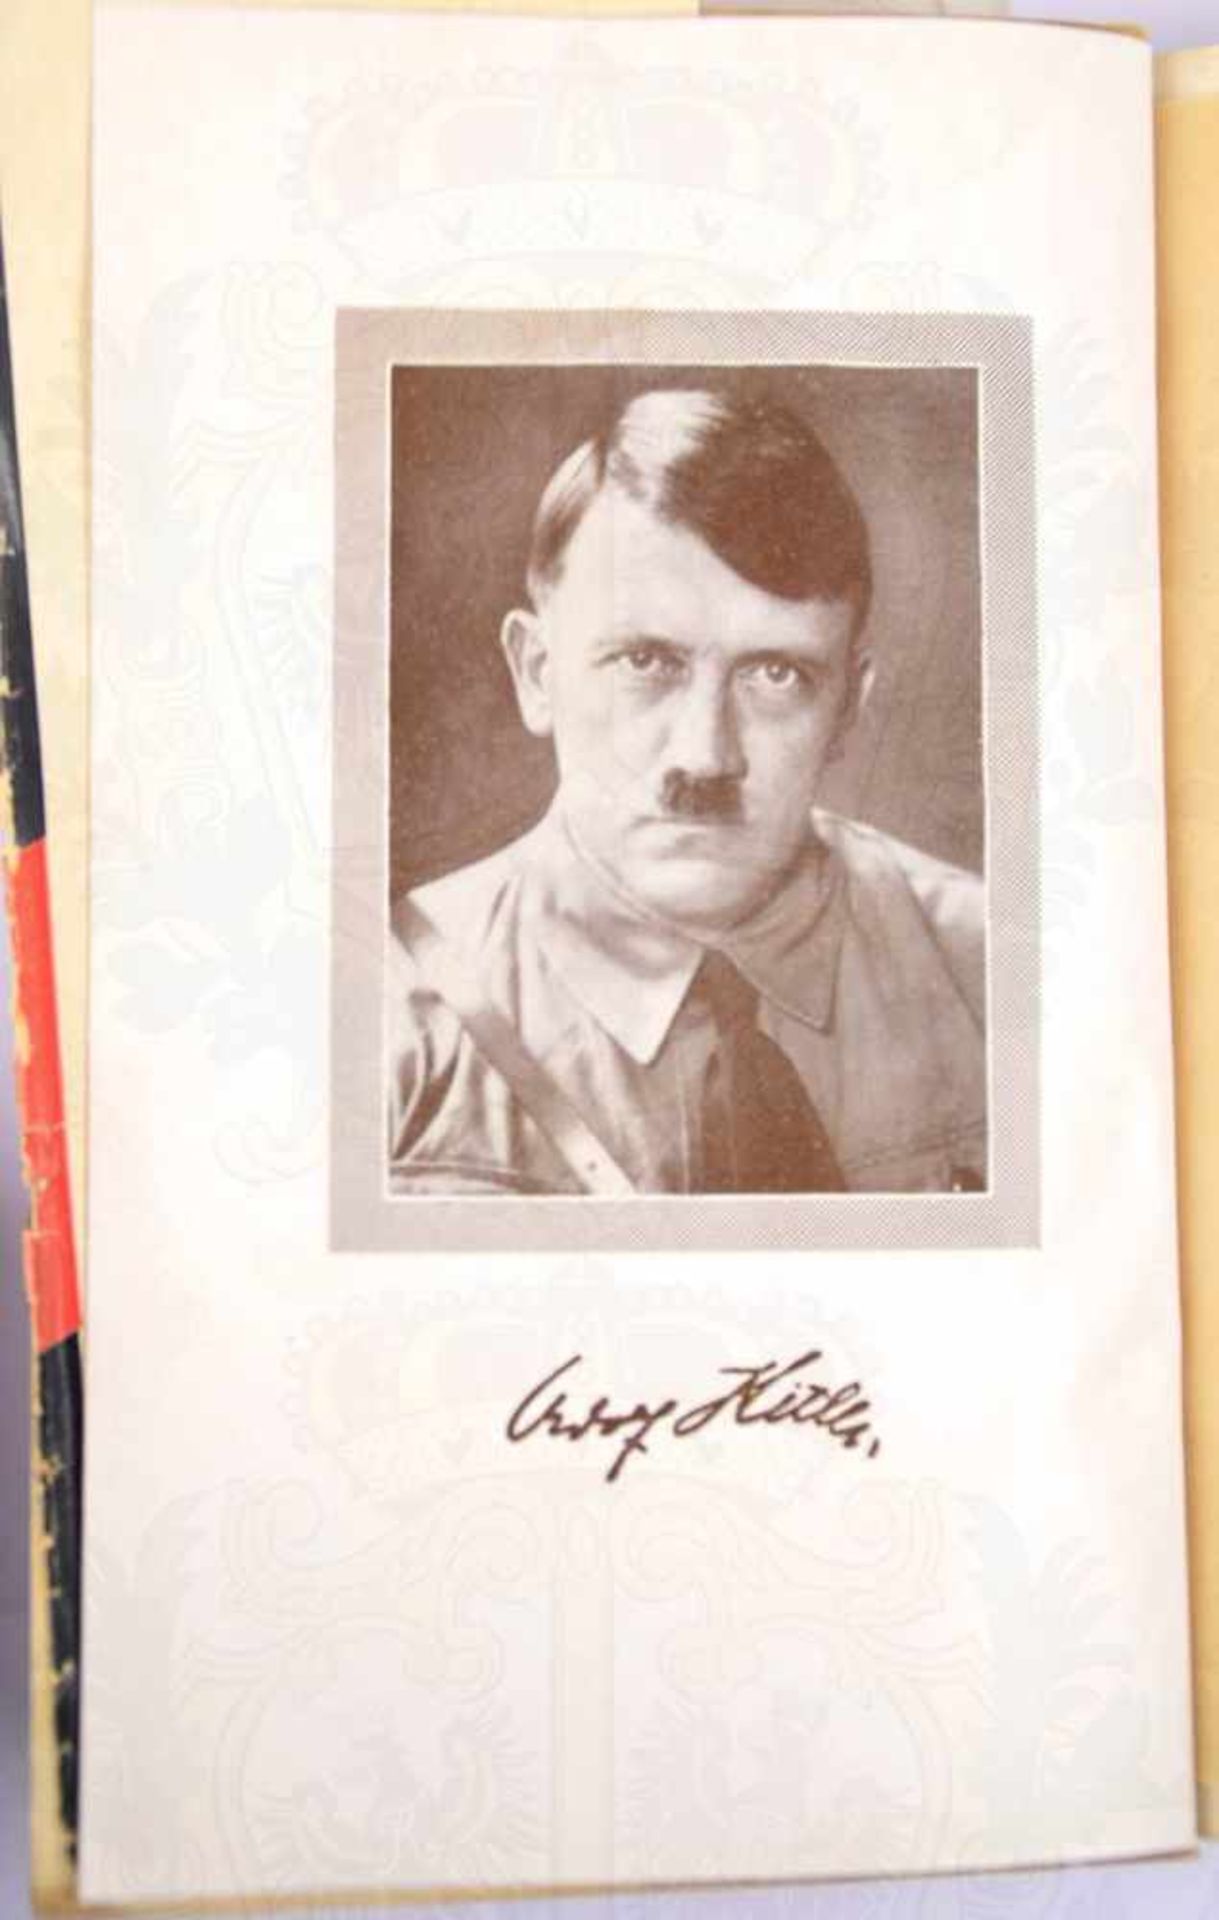 MEIN KAMPF, Adolf Hitler, Ausgabe in 2 Bänden, 23. Auflage, Eher-Verlag, München 1933, zus. 781 - Bild 2 aus 3